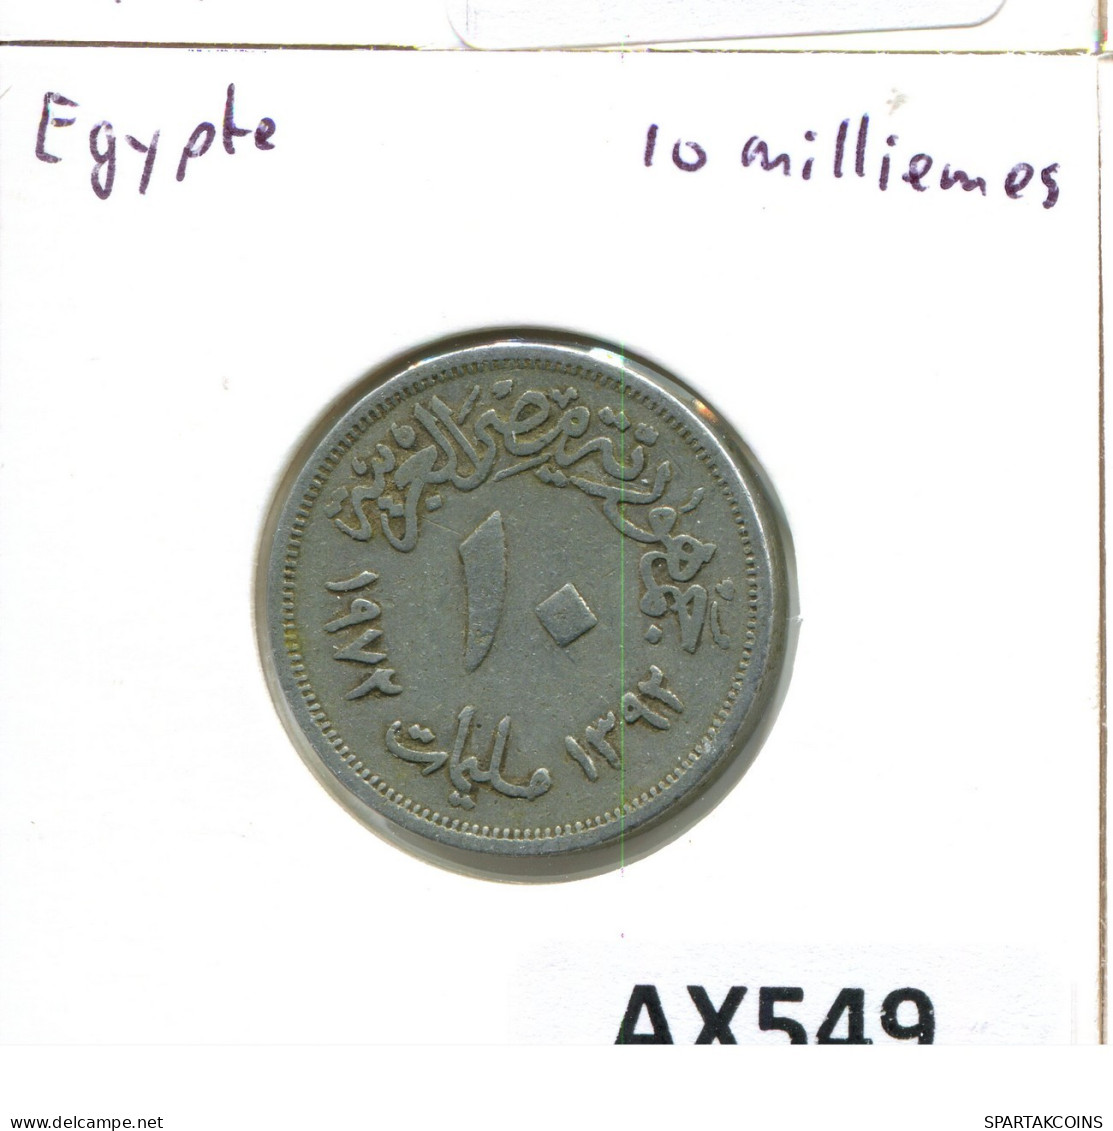 10 MILLIEMES 1976 EGIPTO EGYPT Islámico Moneda #AX549.E.A - Egypt